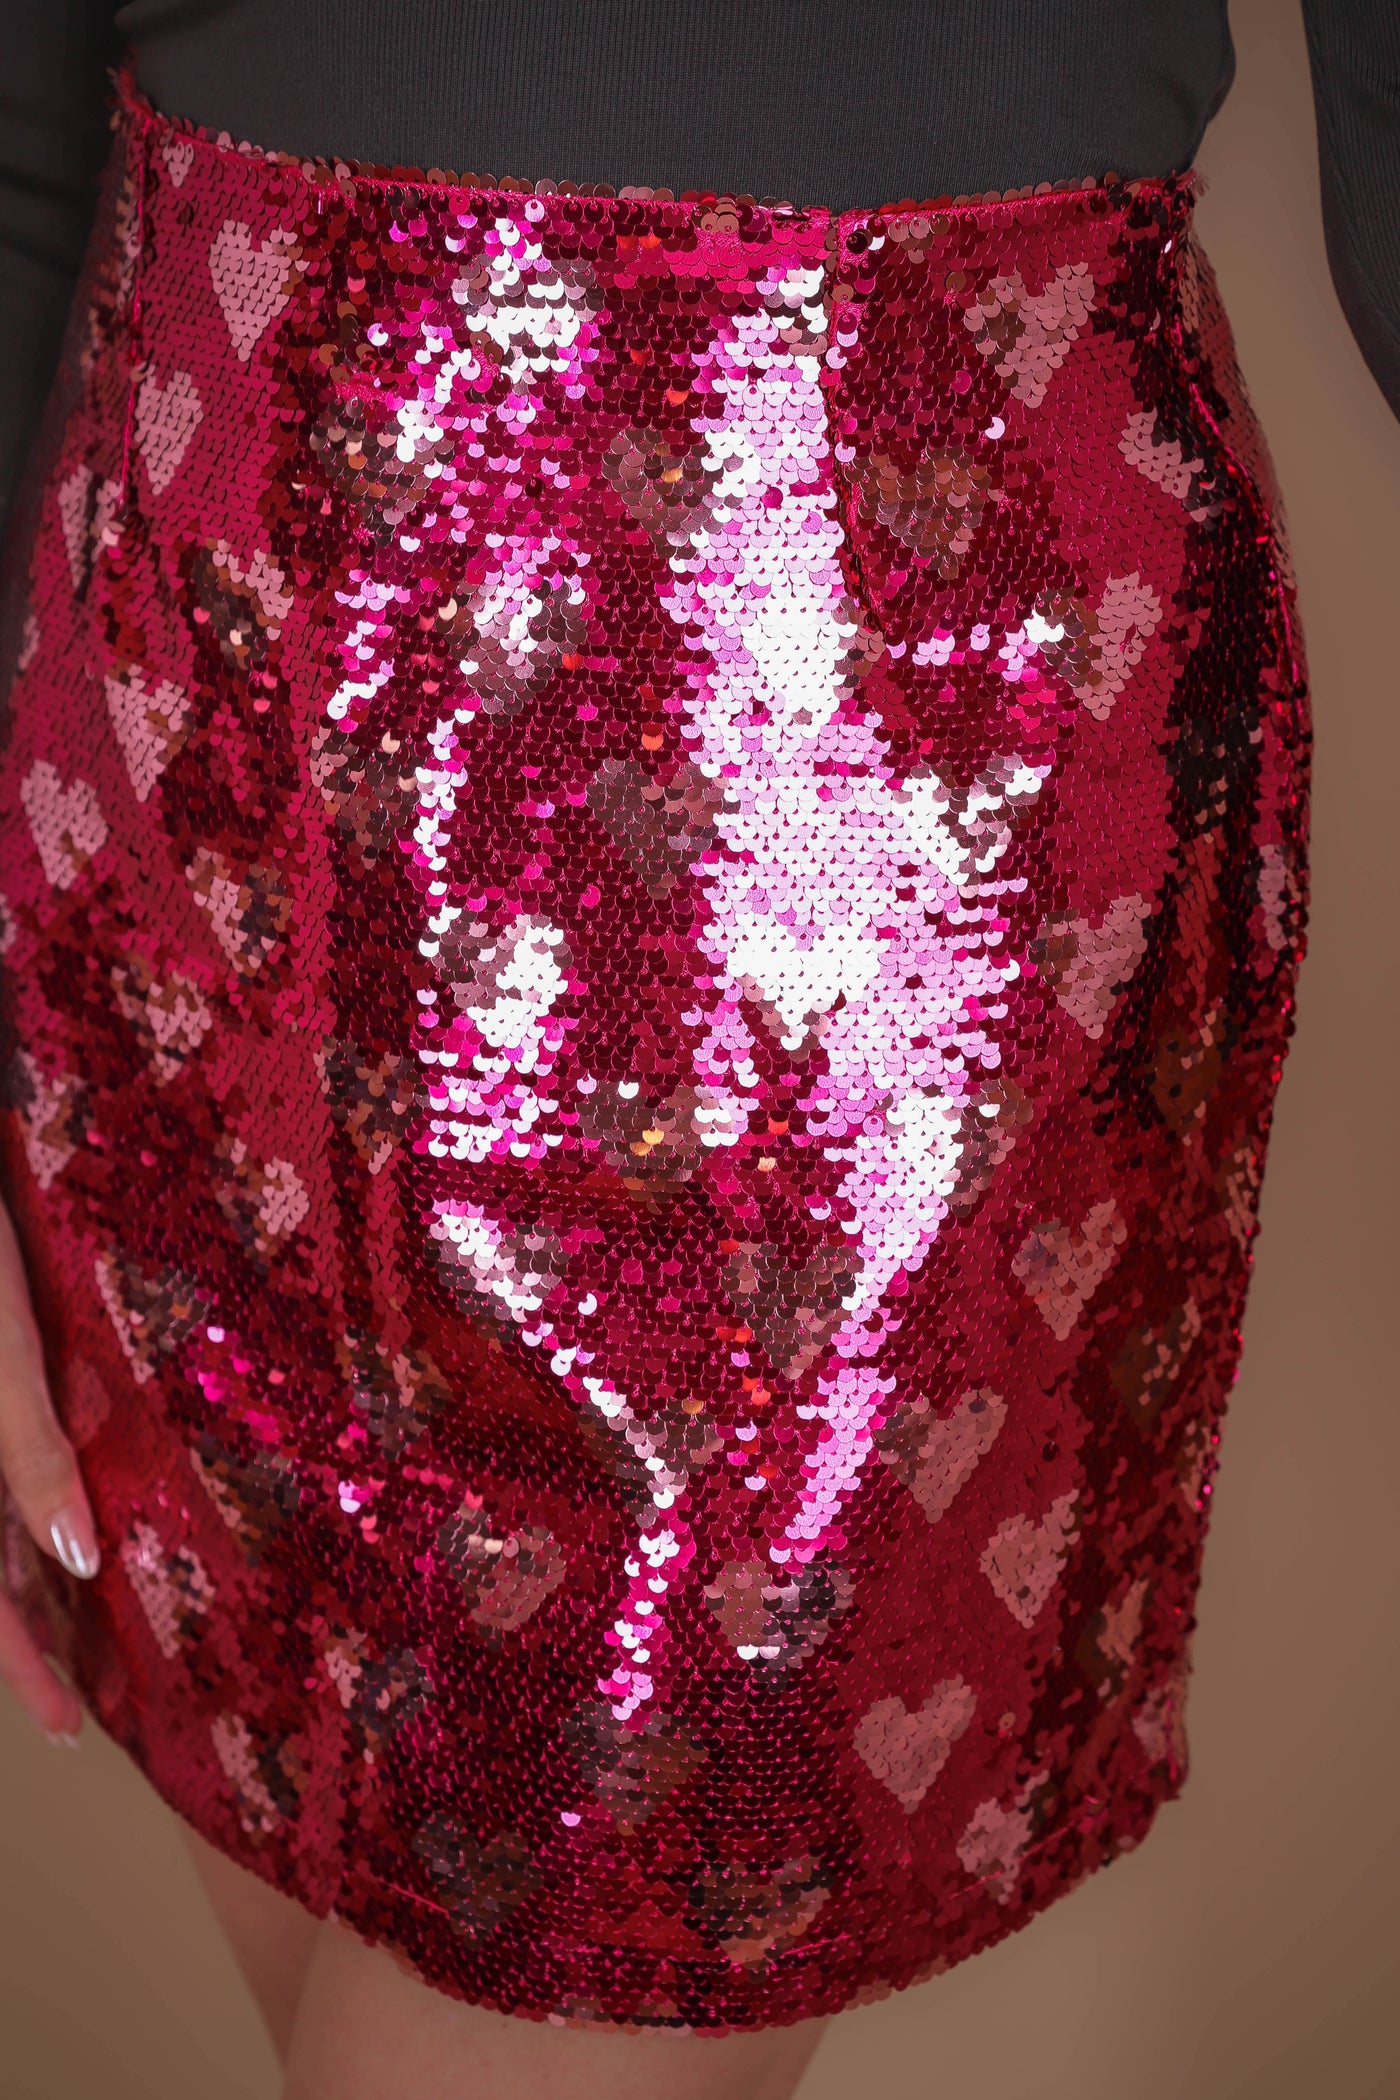 Pink Heart Sequin Mini Skirt- Women's Heart Skirt- Fun Pink Sequin Skirt